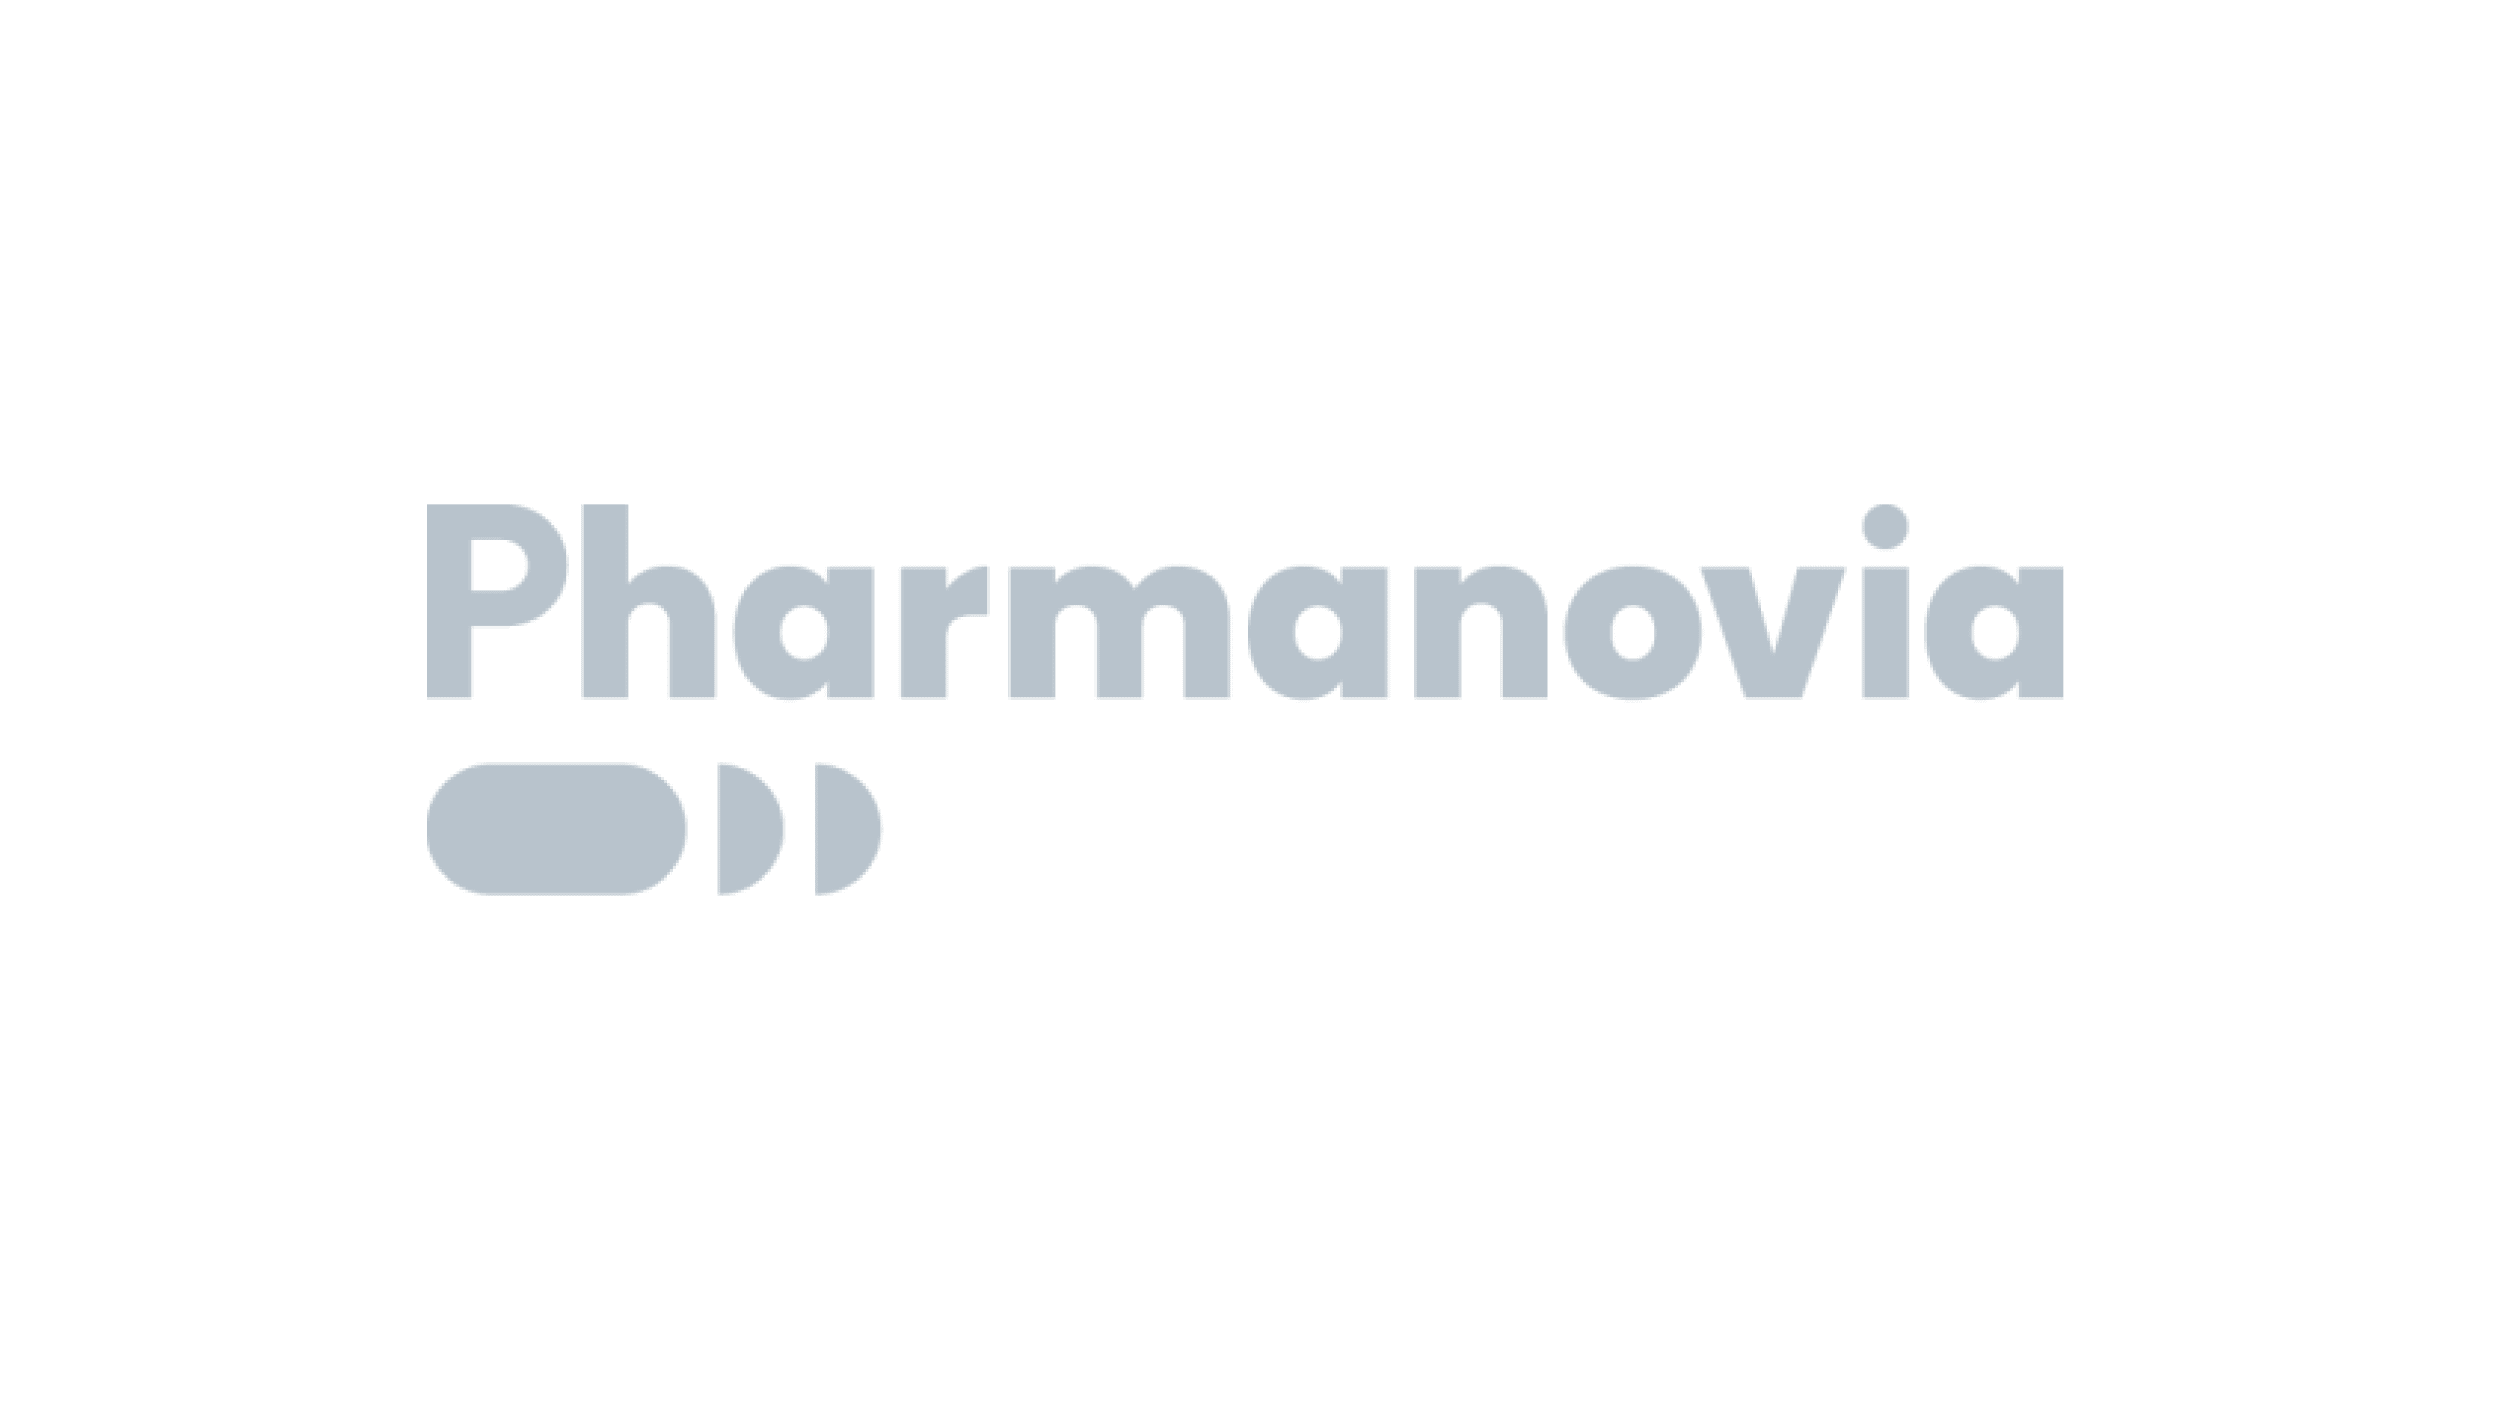 Pharmanovia logo - grey